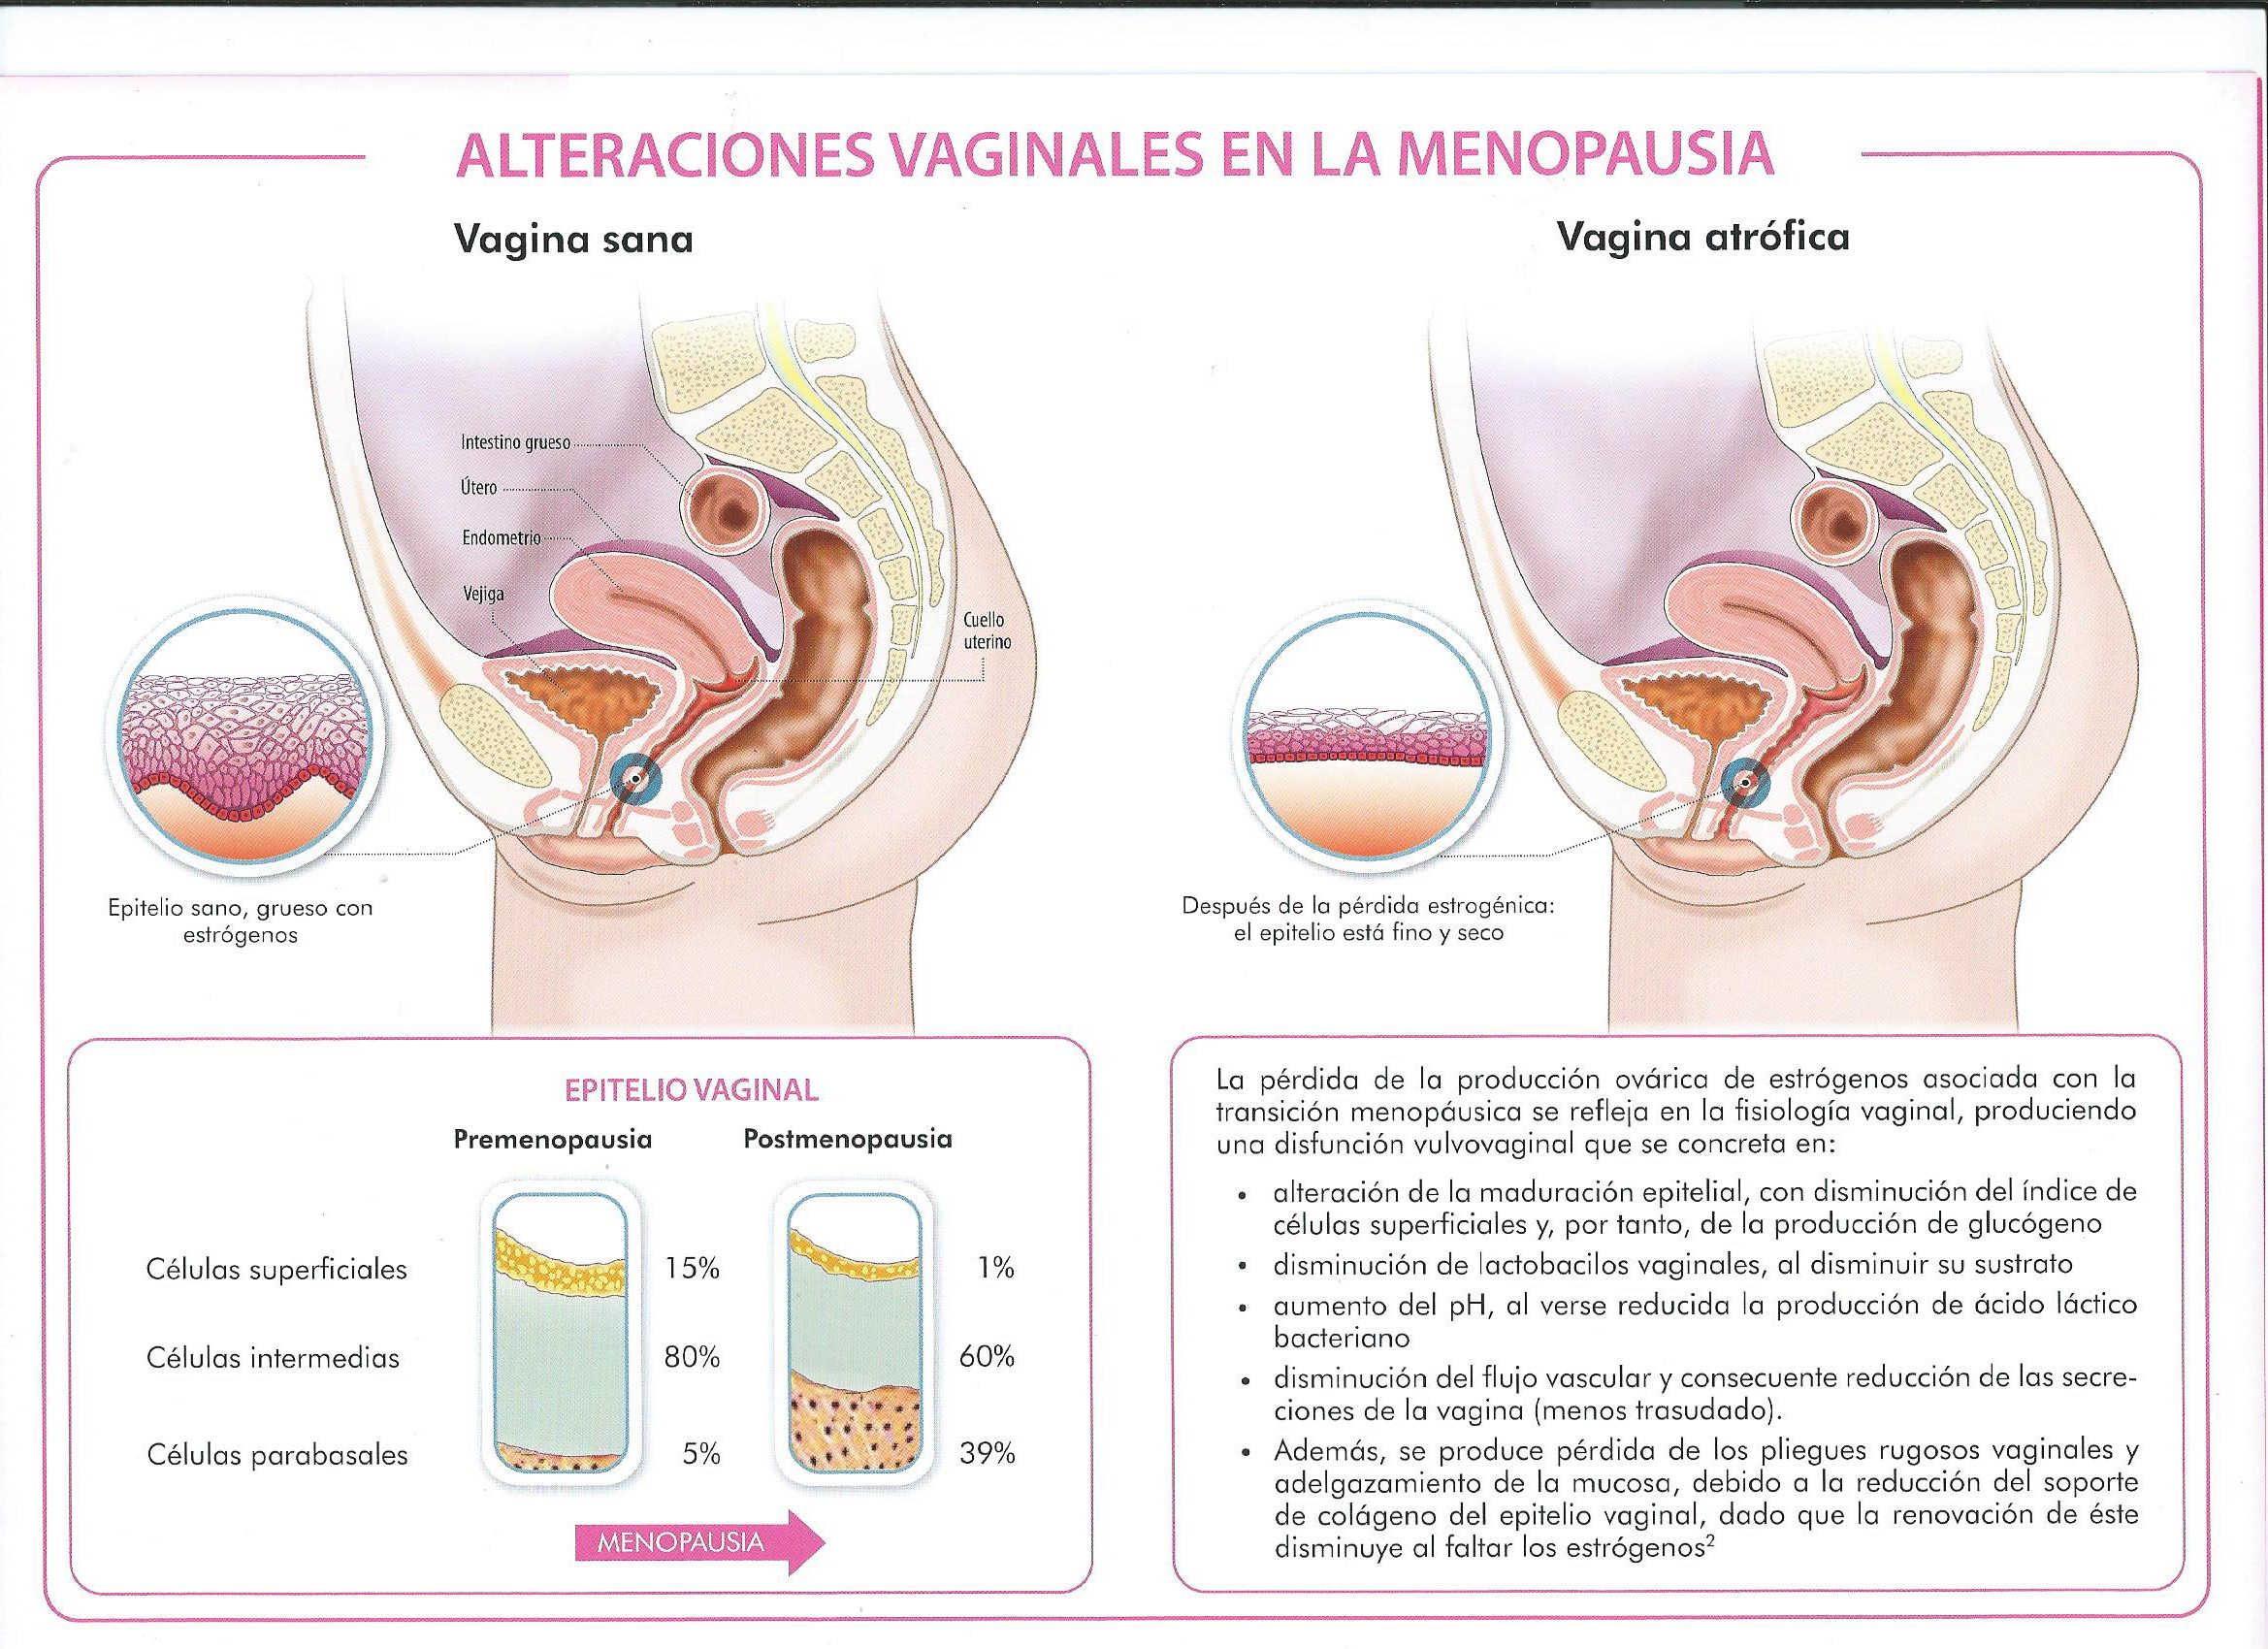 Alteraciones vaginales en la menopausia